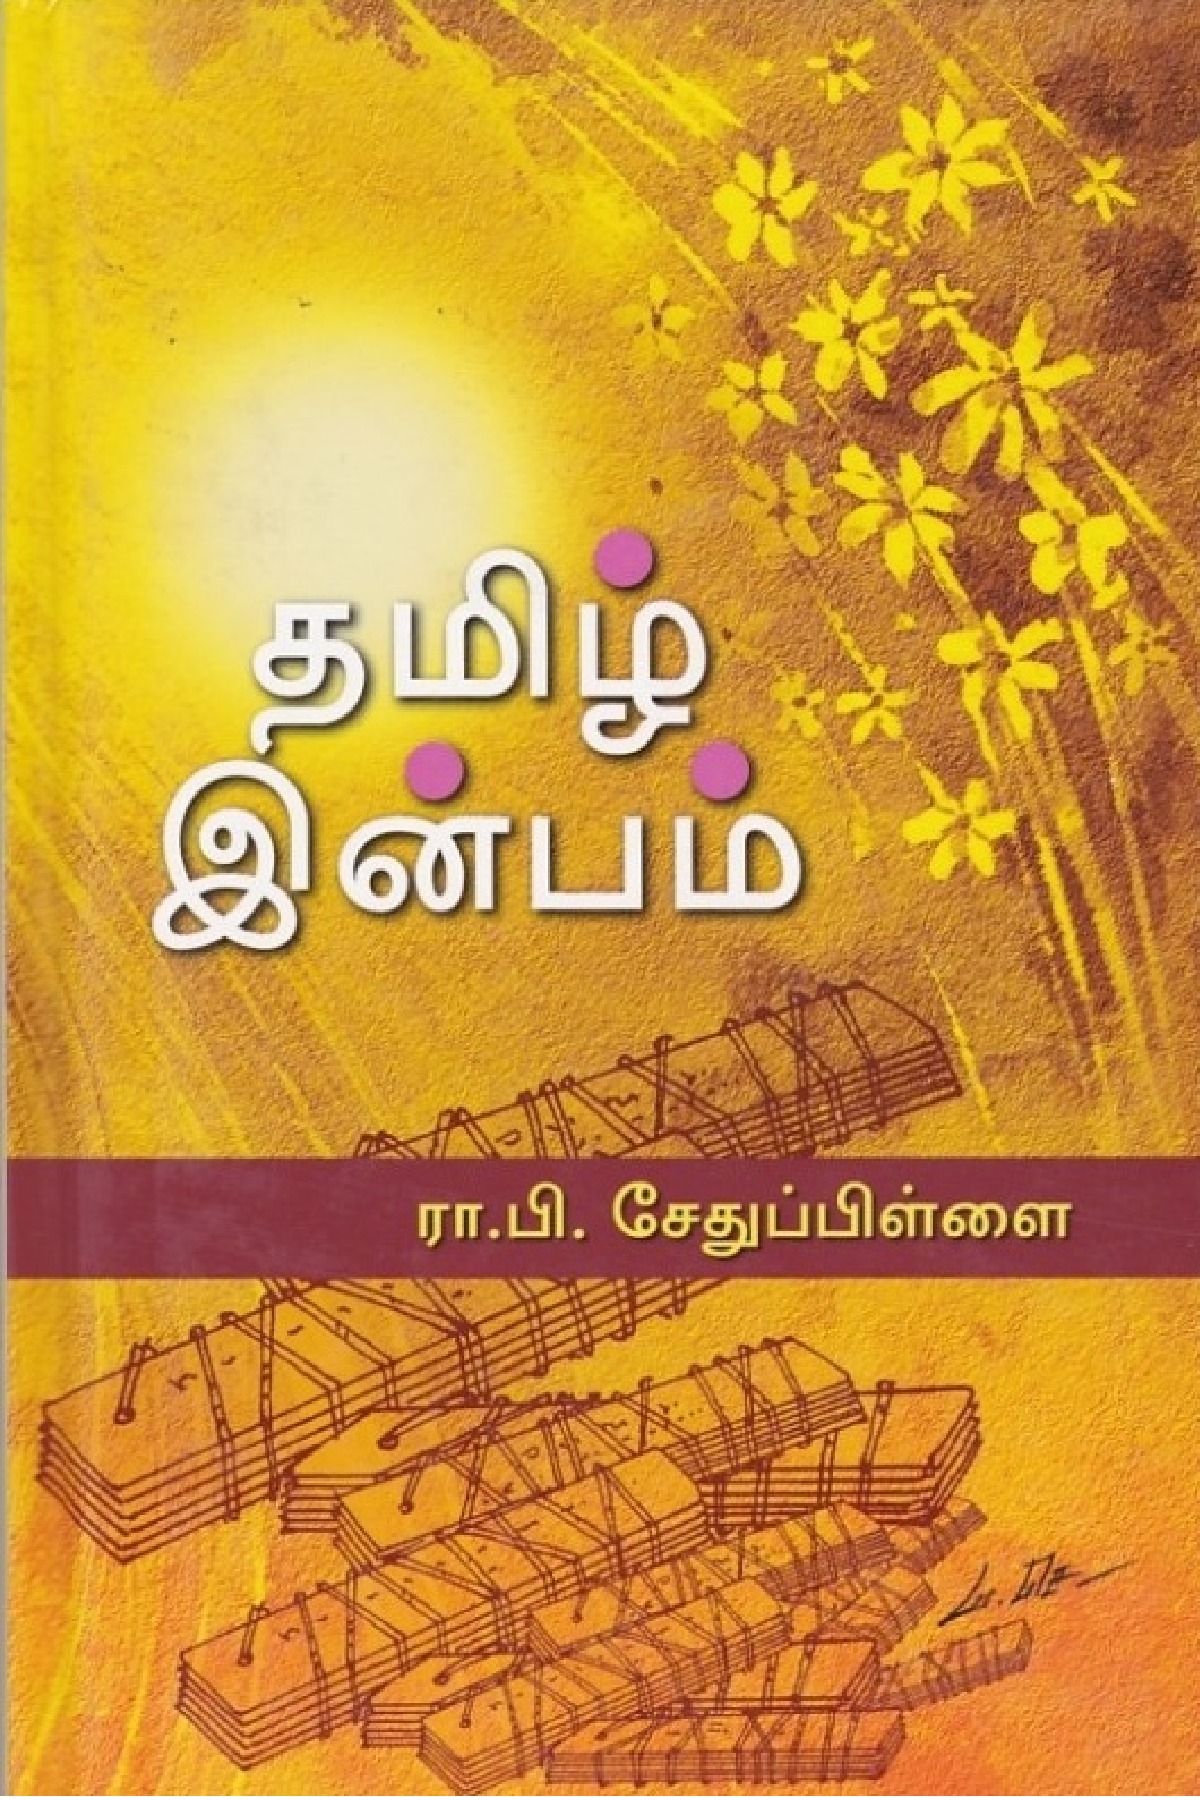 tamil typewriting book pdf free download